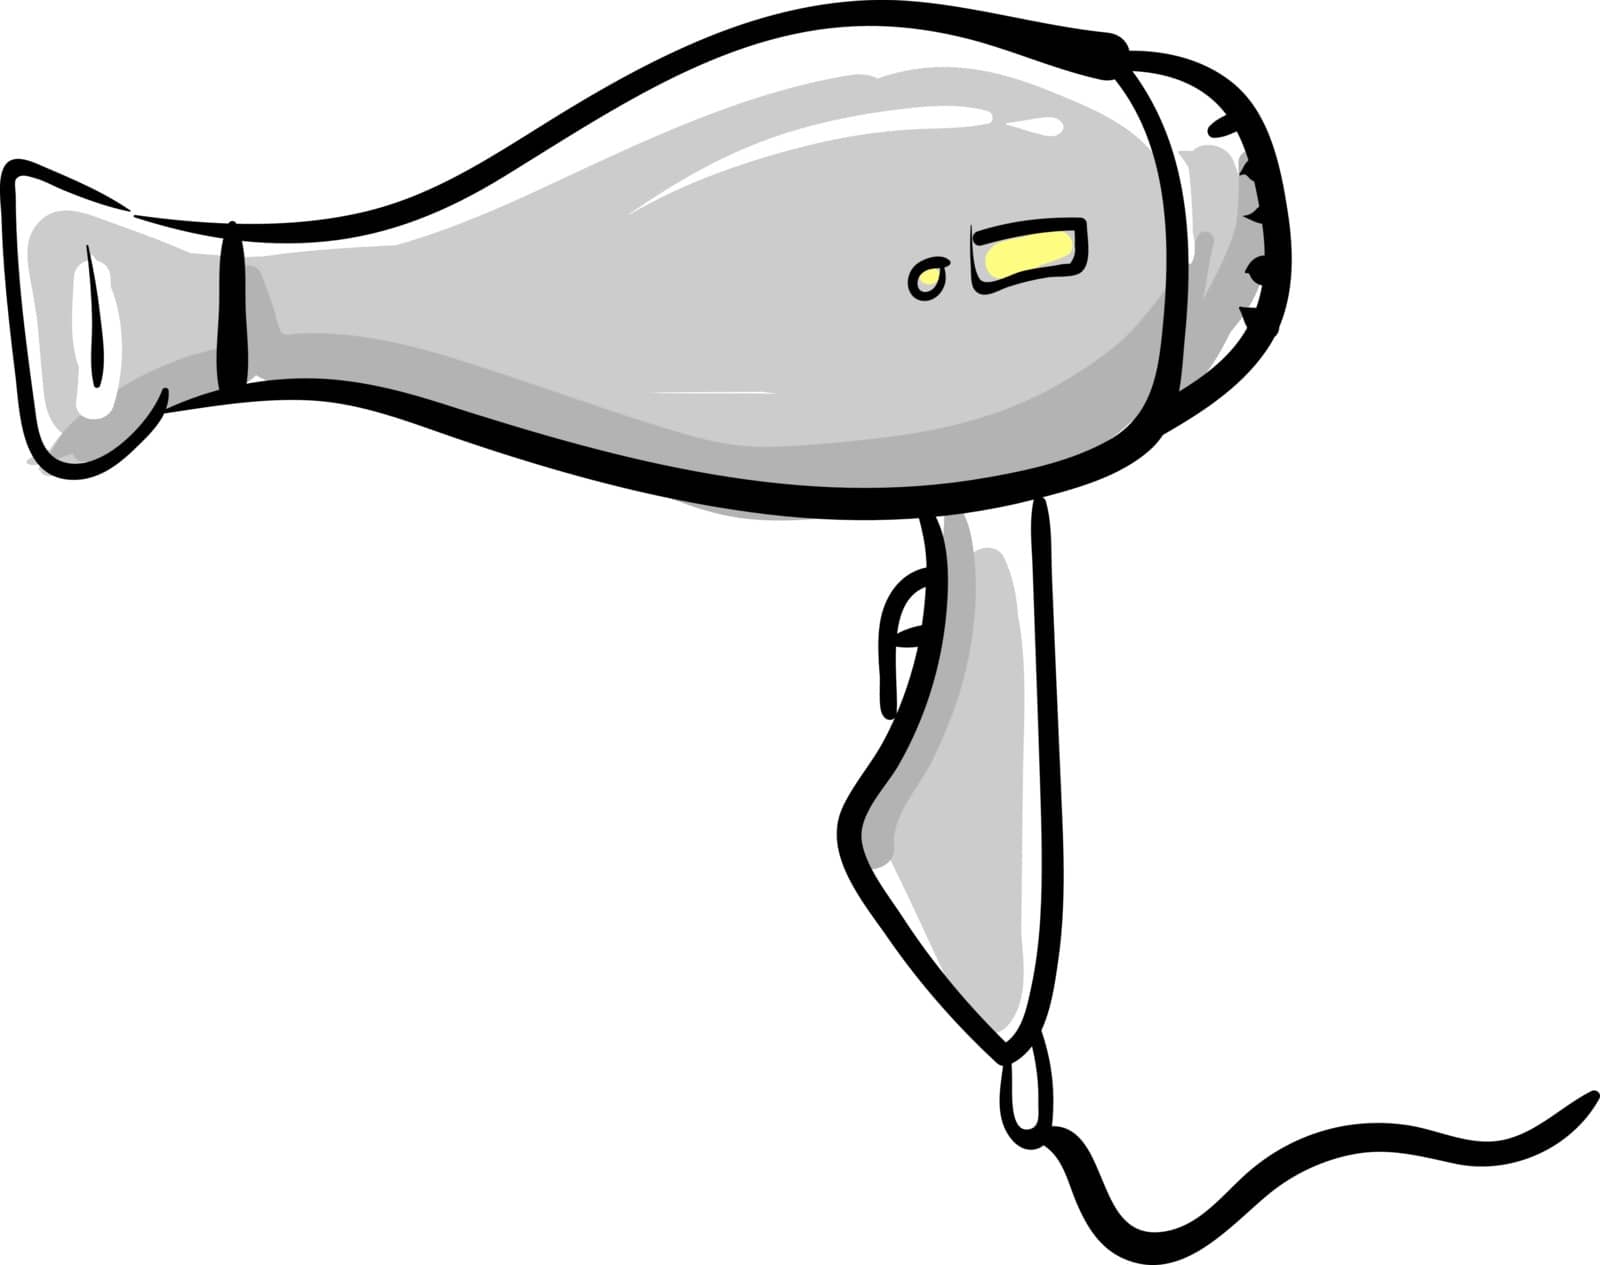 Hair dryer, illustration, vector on white background.